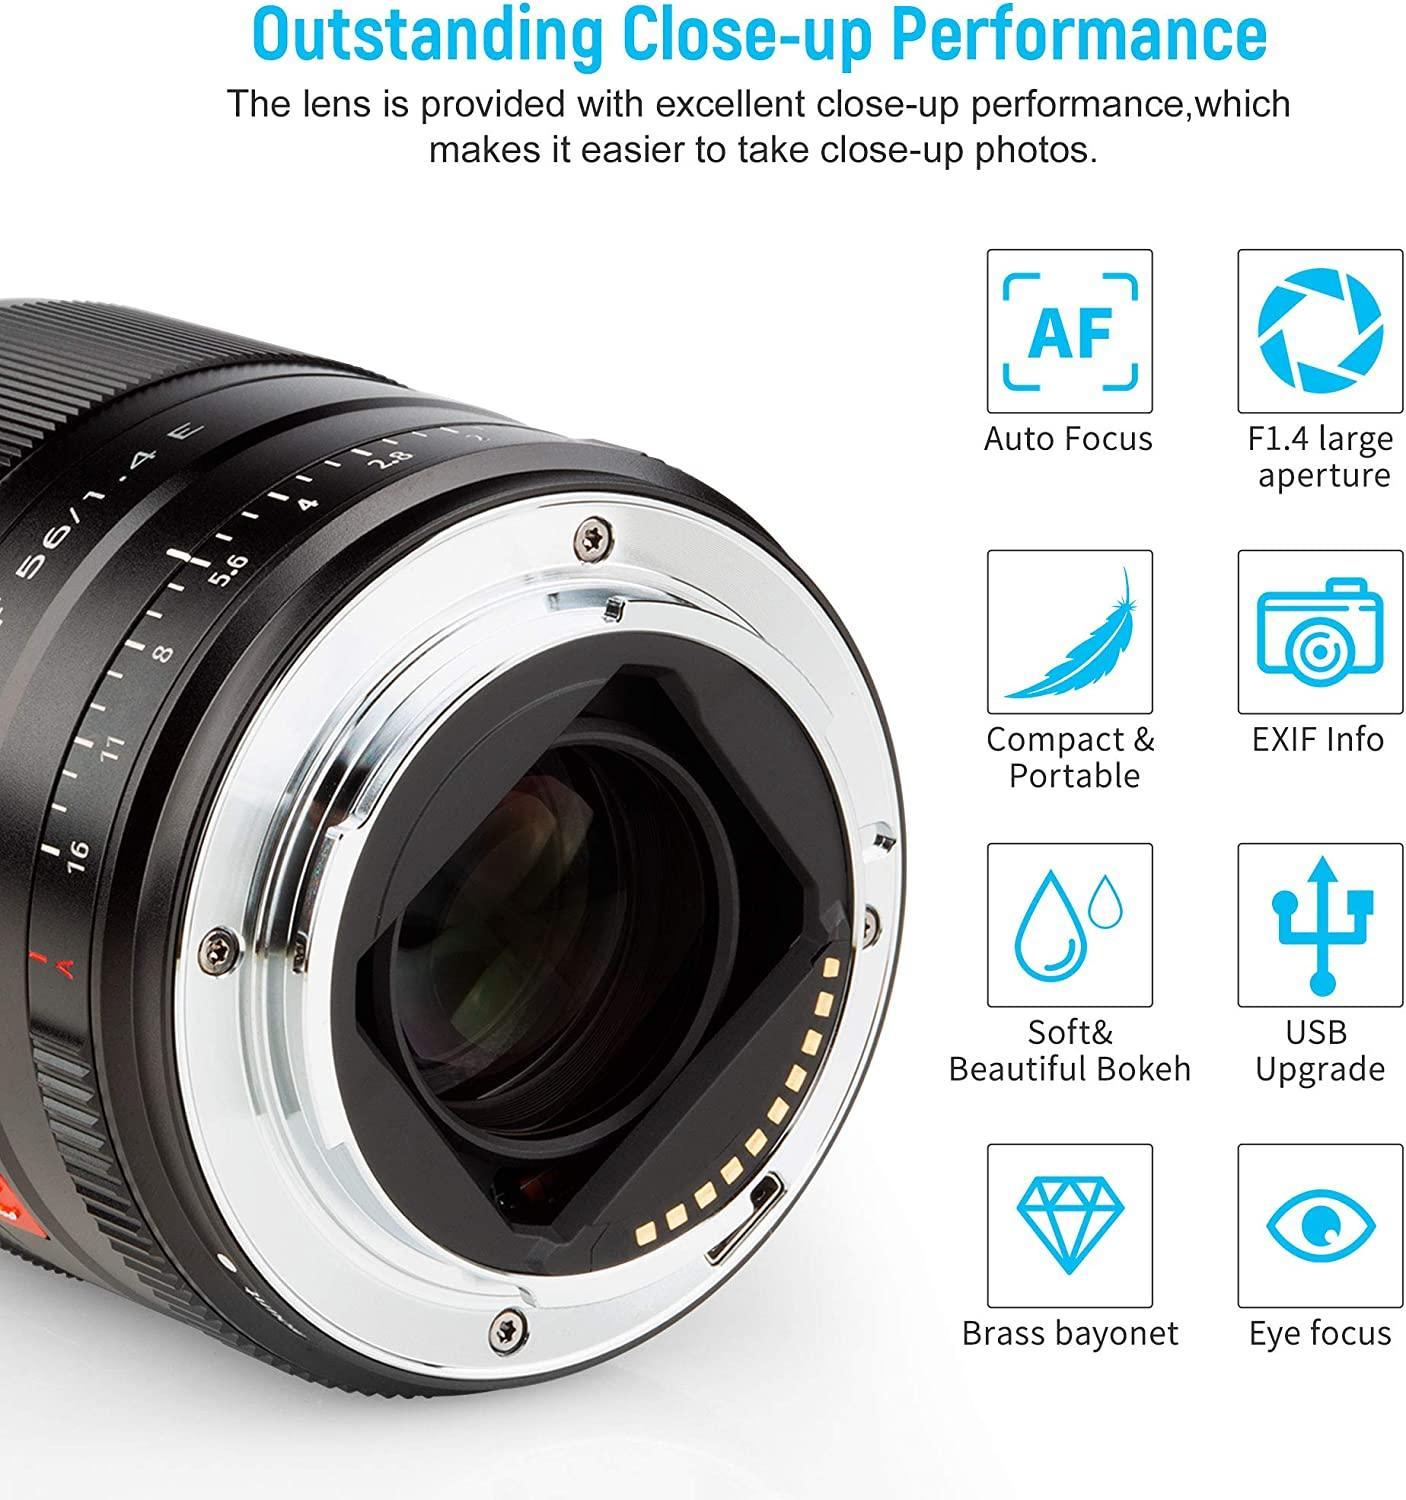 Viltrox 50mmF1.8 FE Mount Auto Focus Full-frame Portrait Prime Lens for  Sony E-mount Mirrorless Cameras